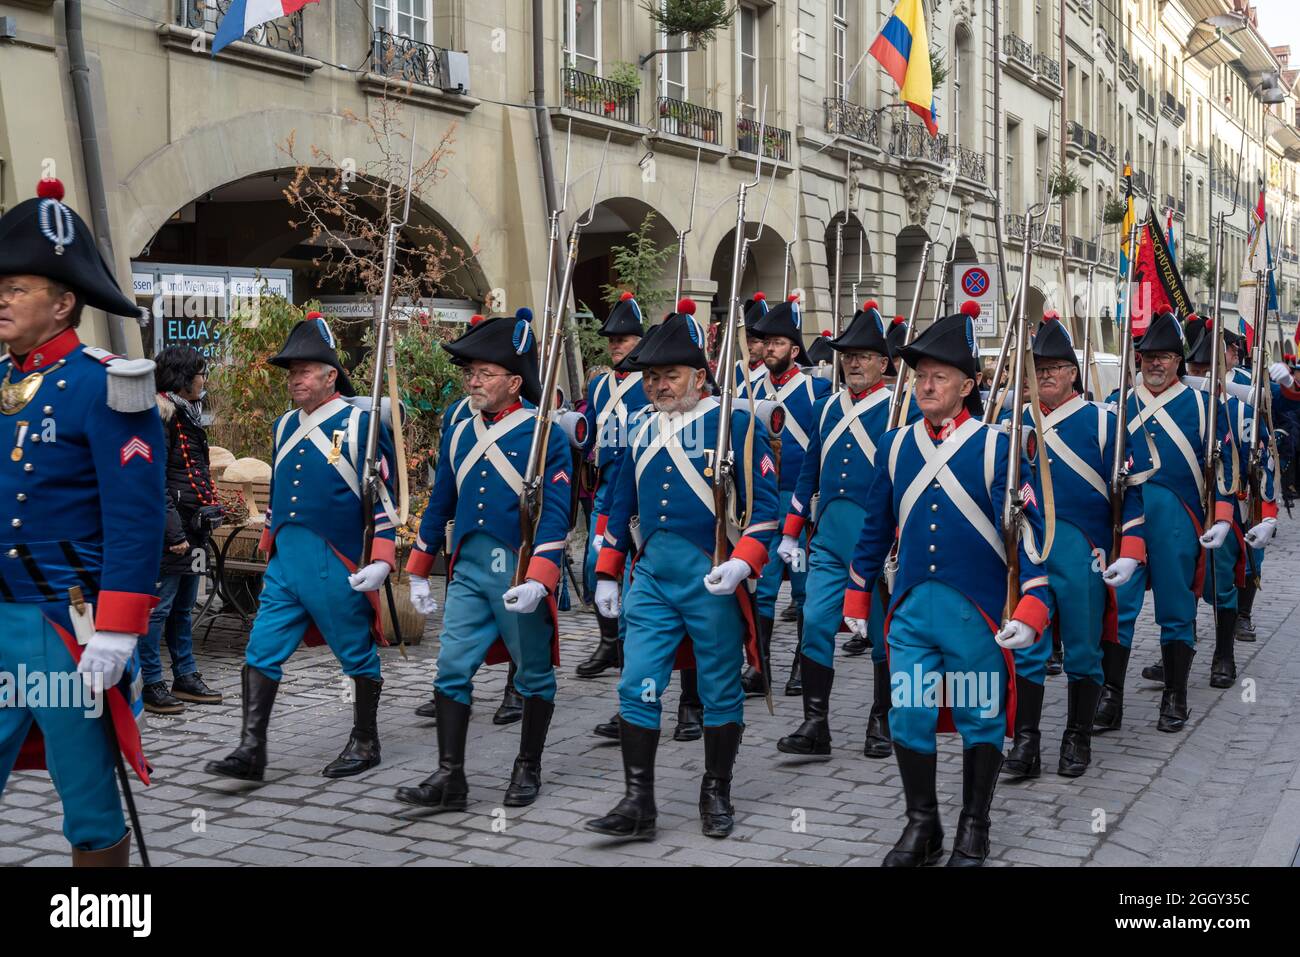 Sfilata di soldati svizzeri in costume tradizionale durante le vacanze Zibelemarit (mercato delle cipolle) - Berna, Svizzera Foto Stock